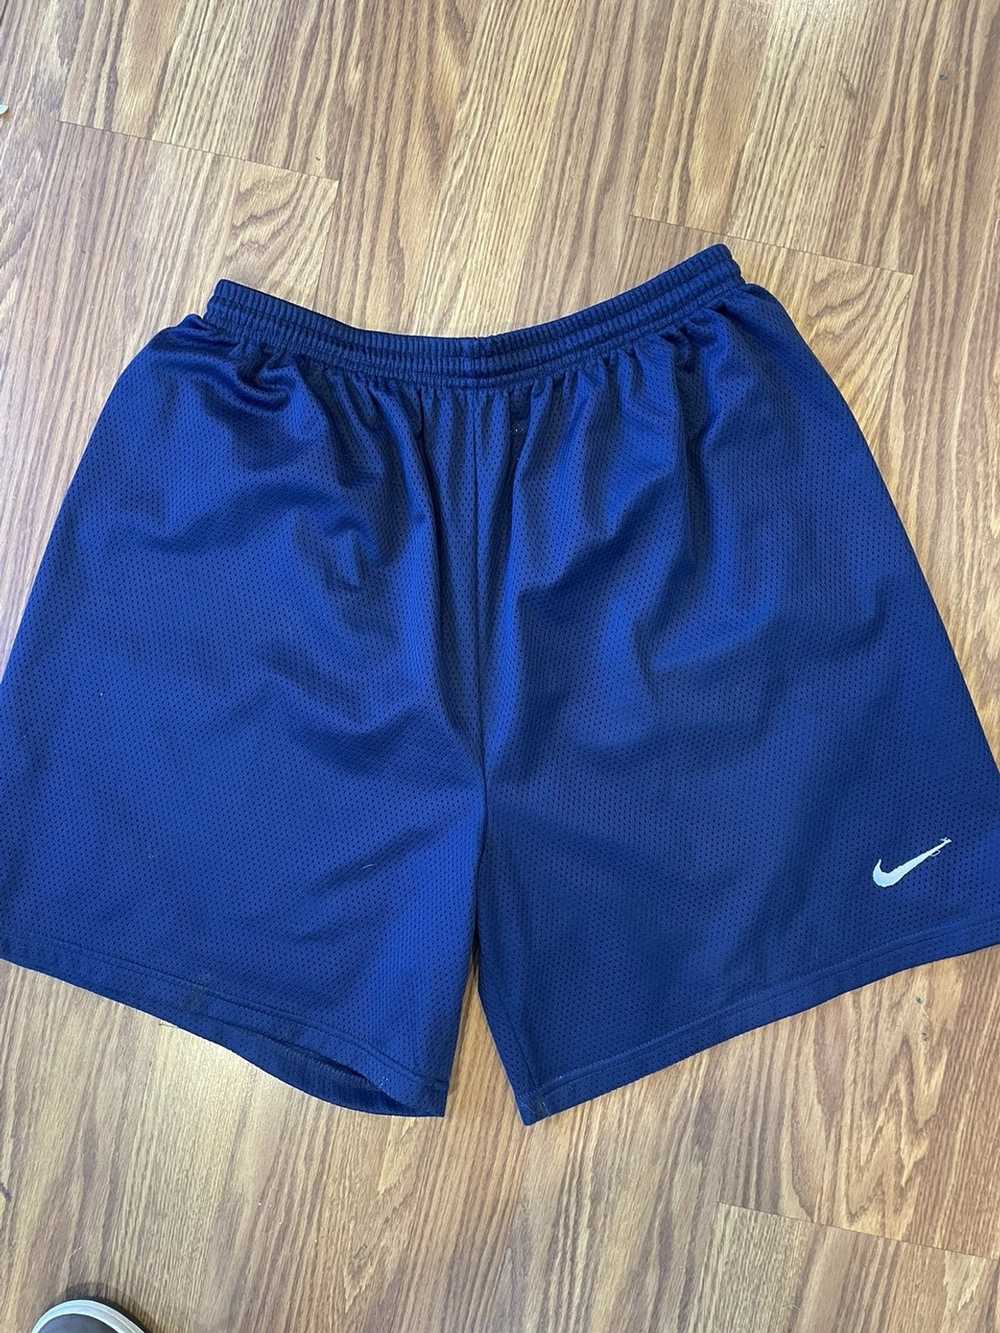 Nike Vintage 90s nike basketball shorts xl blue - image 2